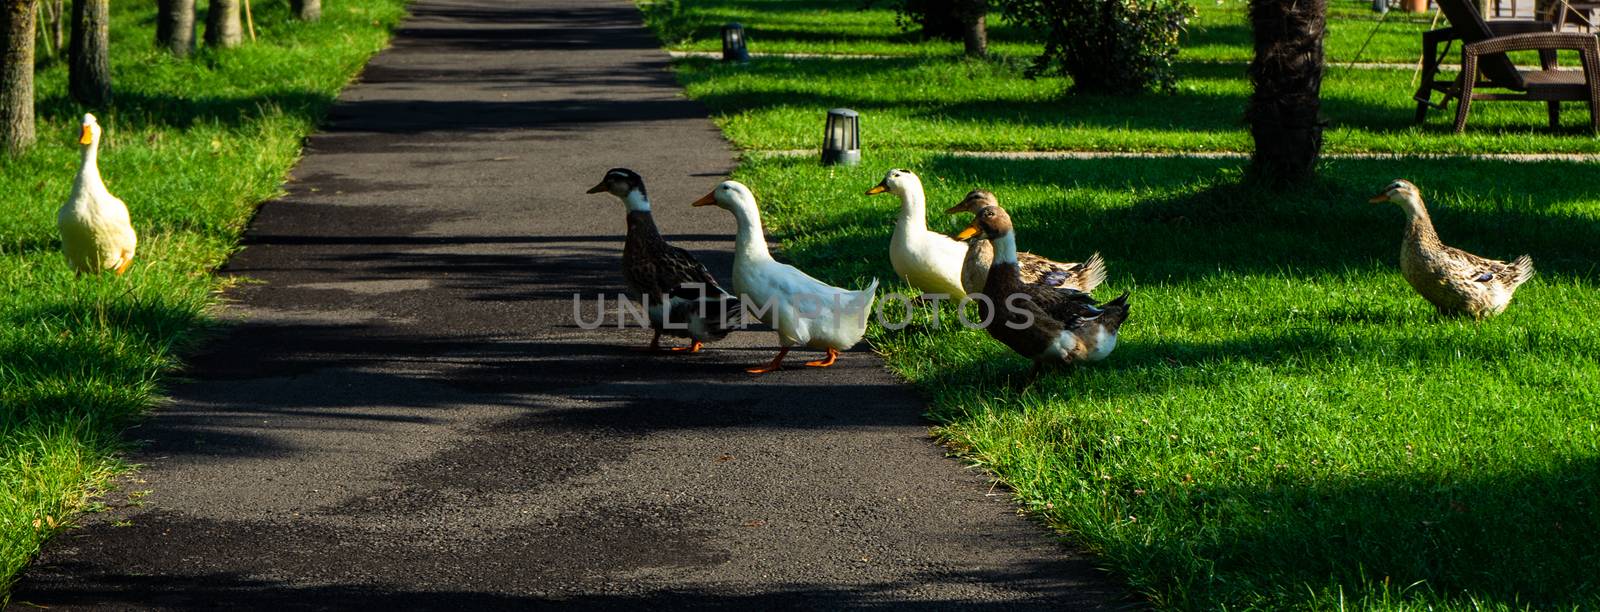 Ducks in Lopota lake by Elet